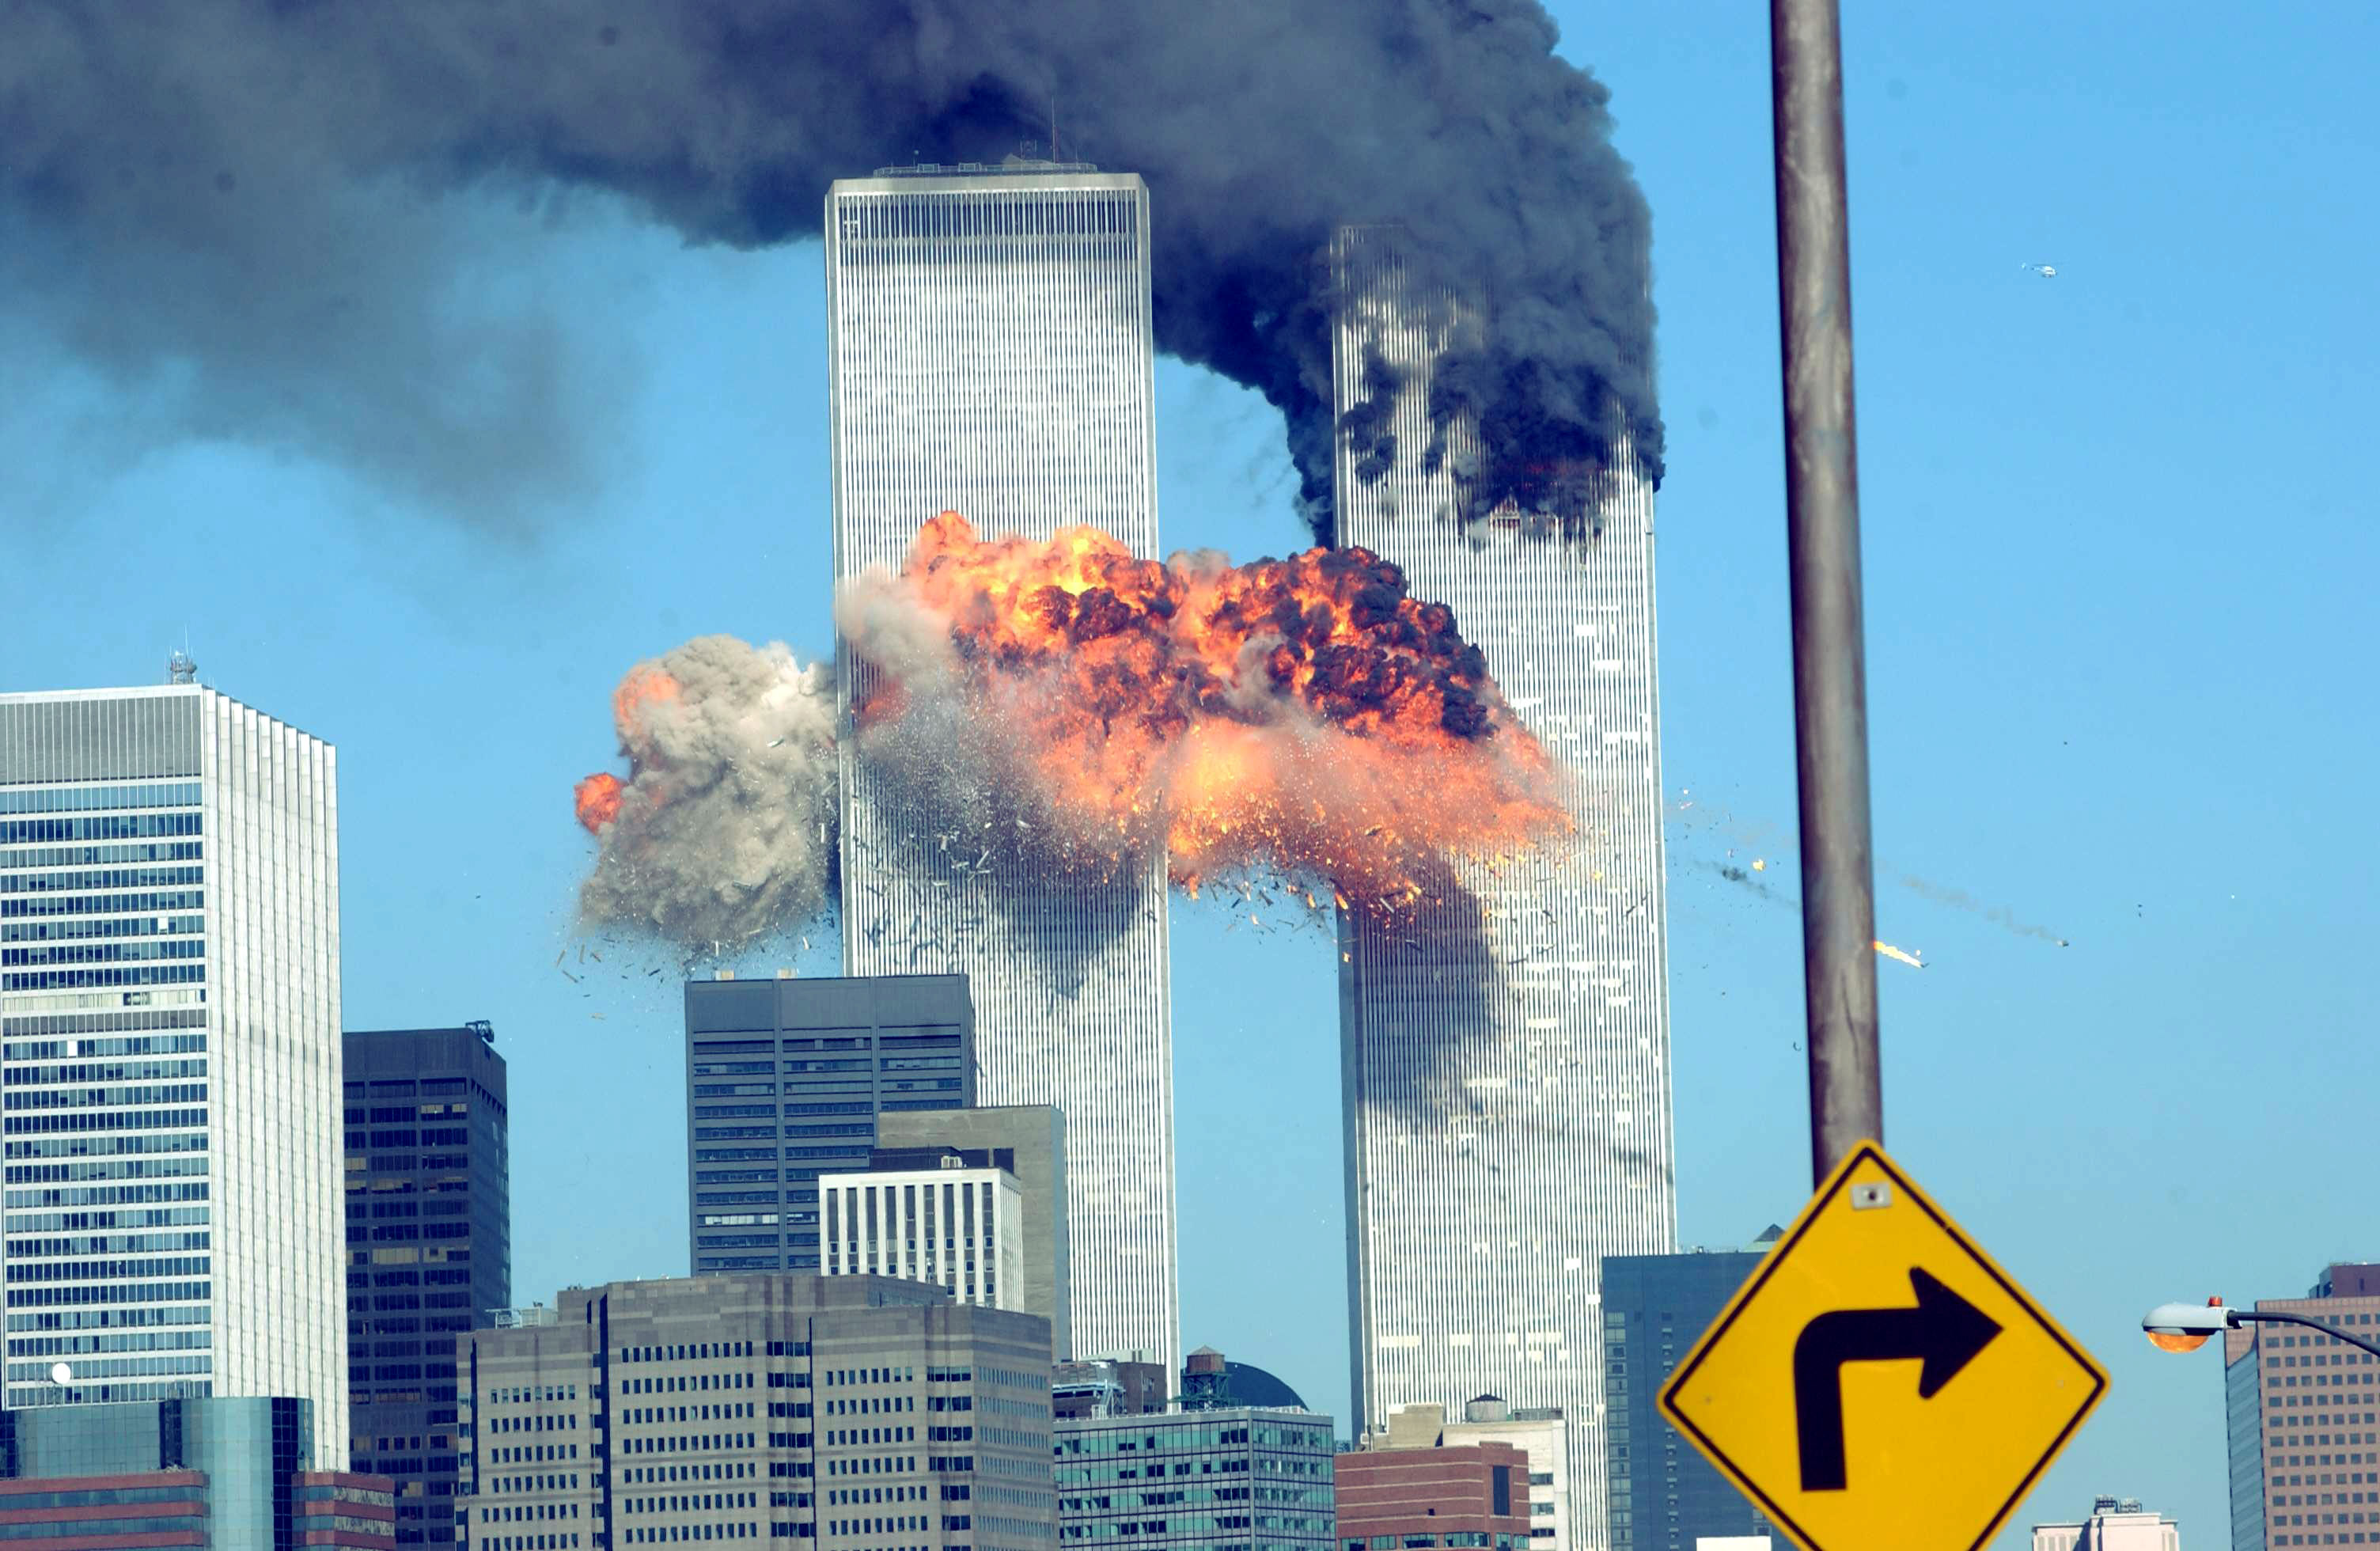 Mohammed estuvo detrás de los ataques al World Trade Center que mataron a casi 3.000 personas